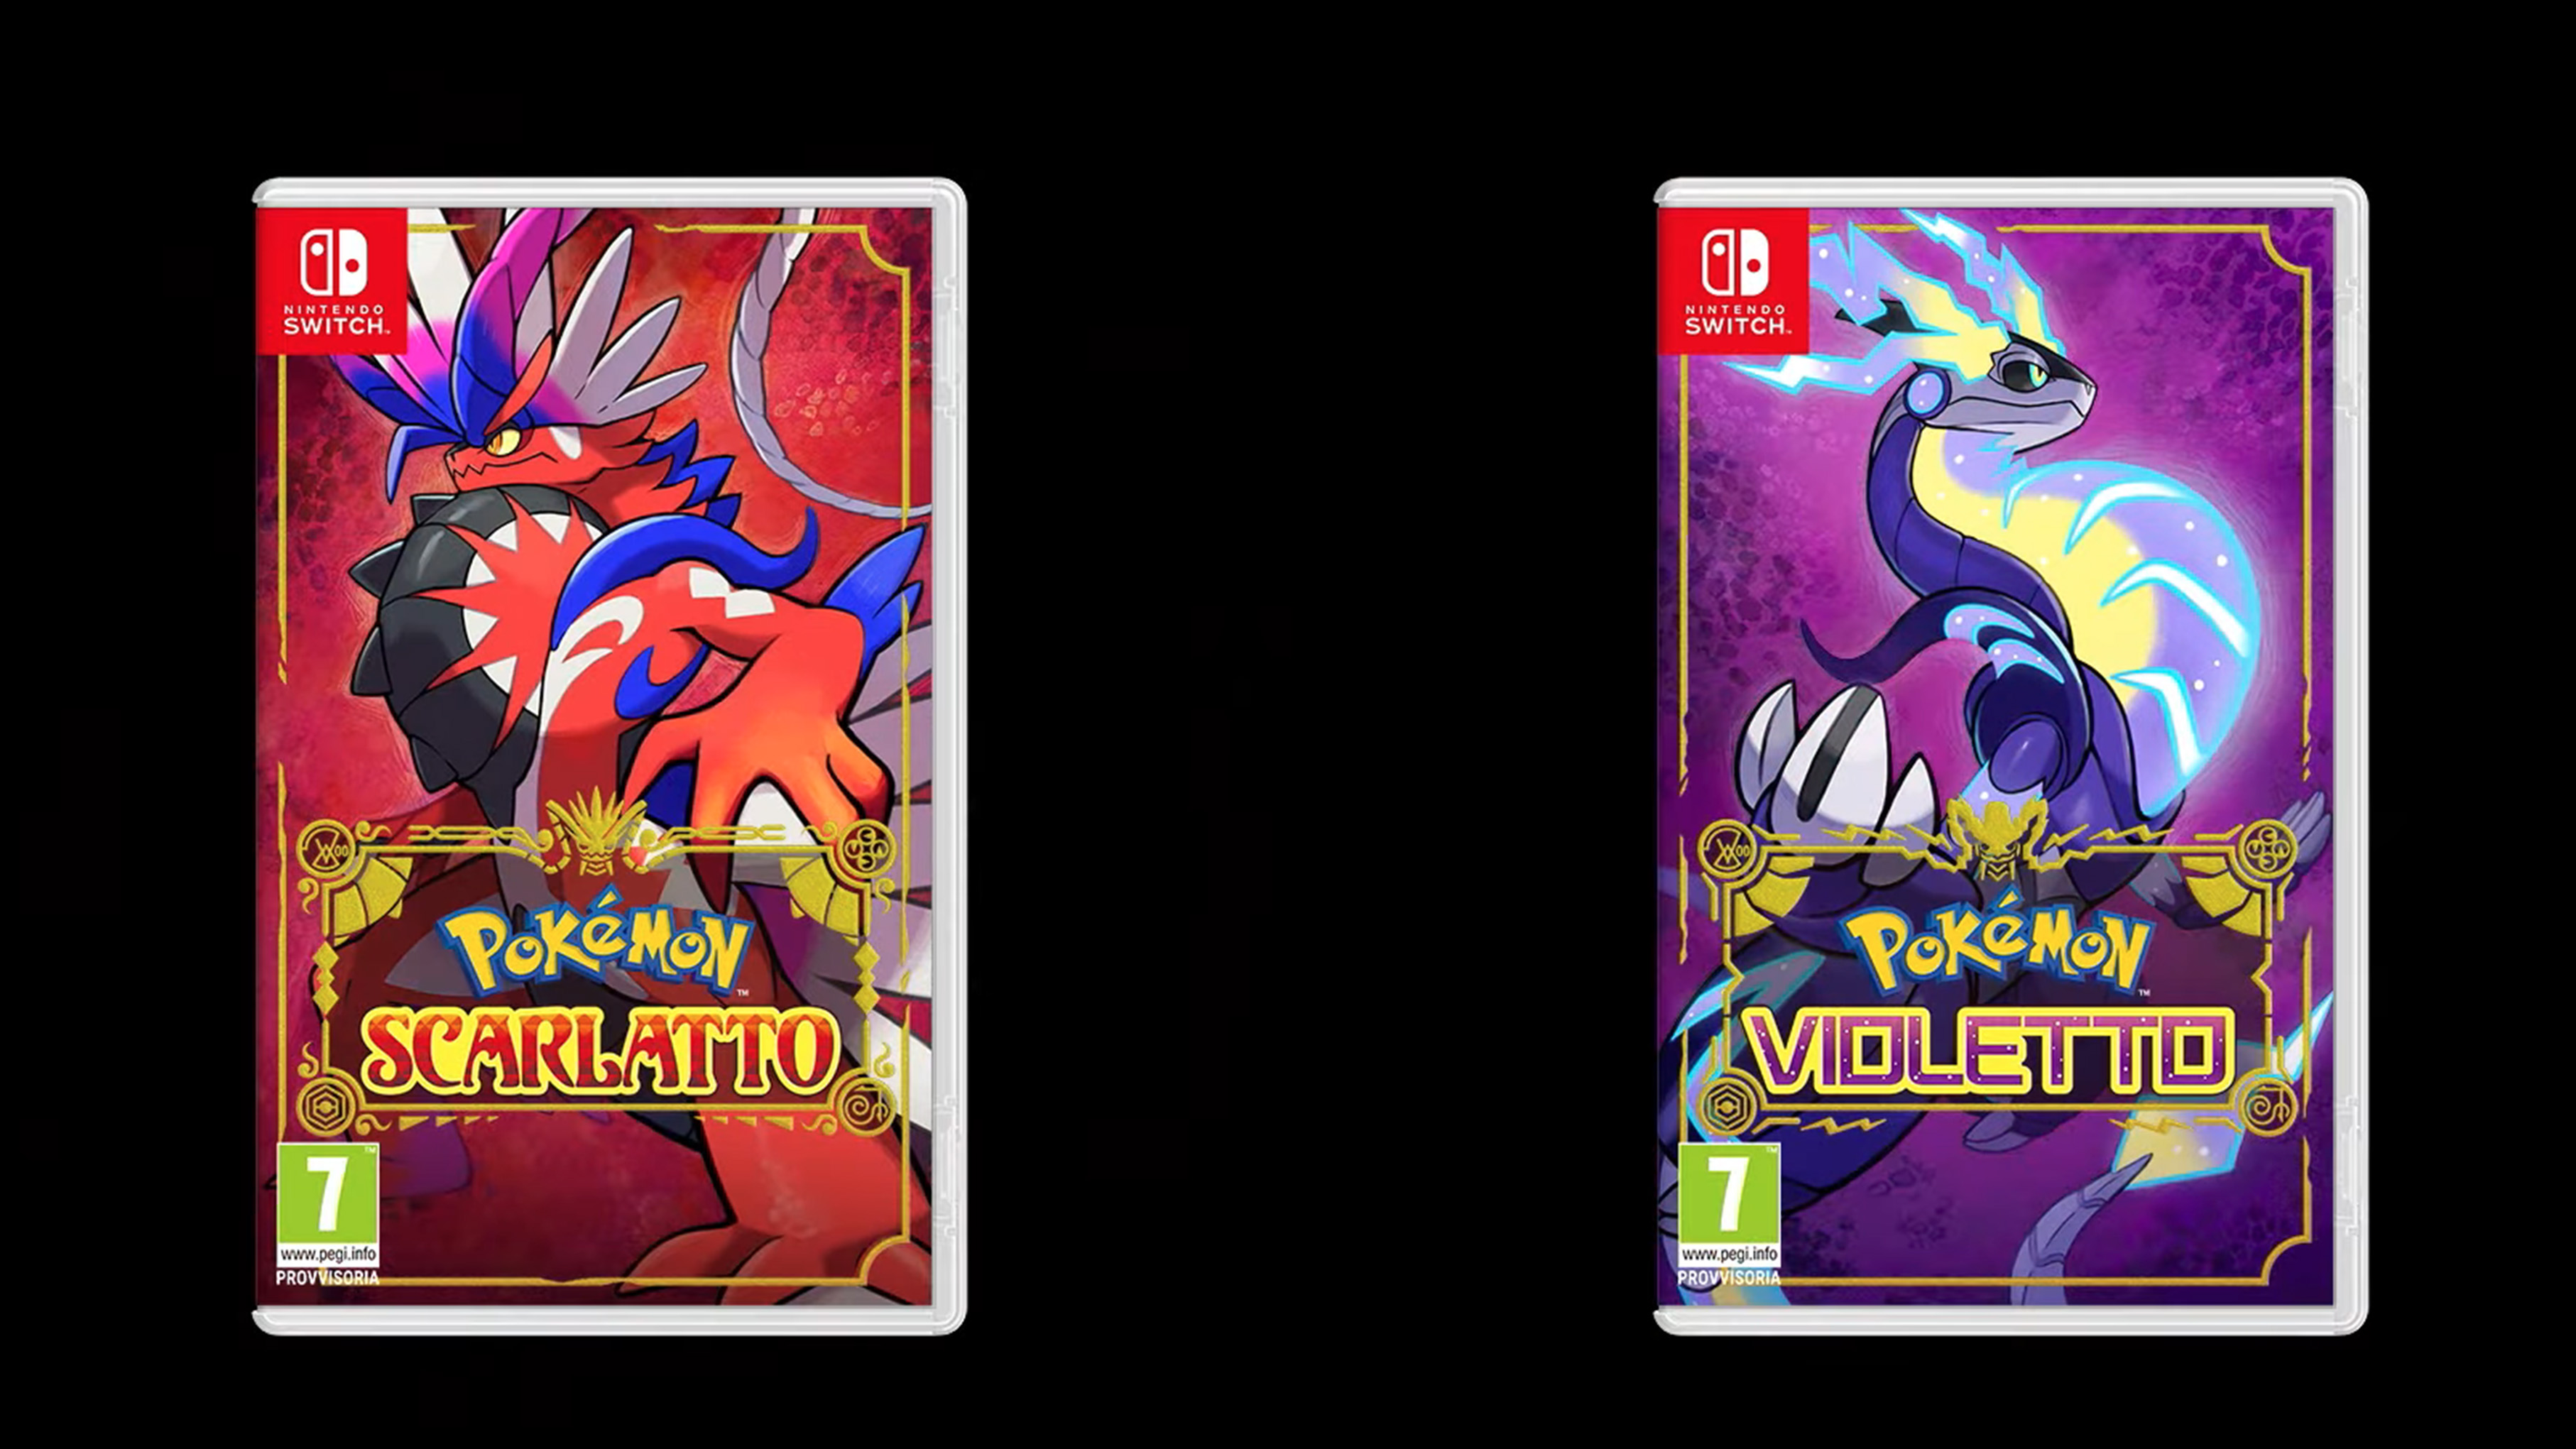 Pokémon Scarlatto e Pokémon Violetto, il nuovo trailer mostra i Pokémon  Leggendari e la data di uscita!